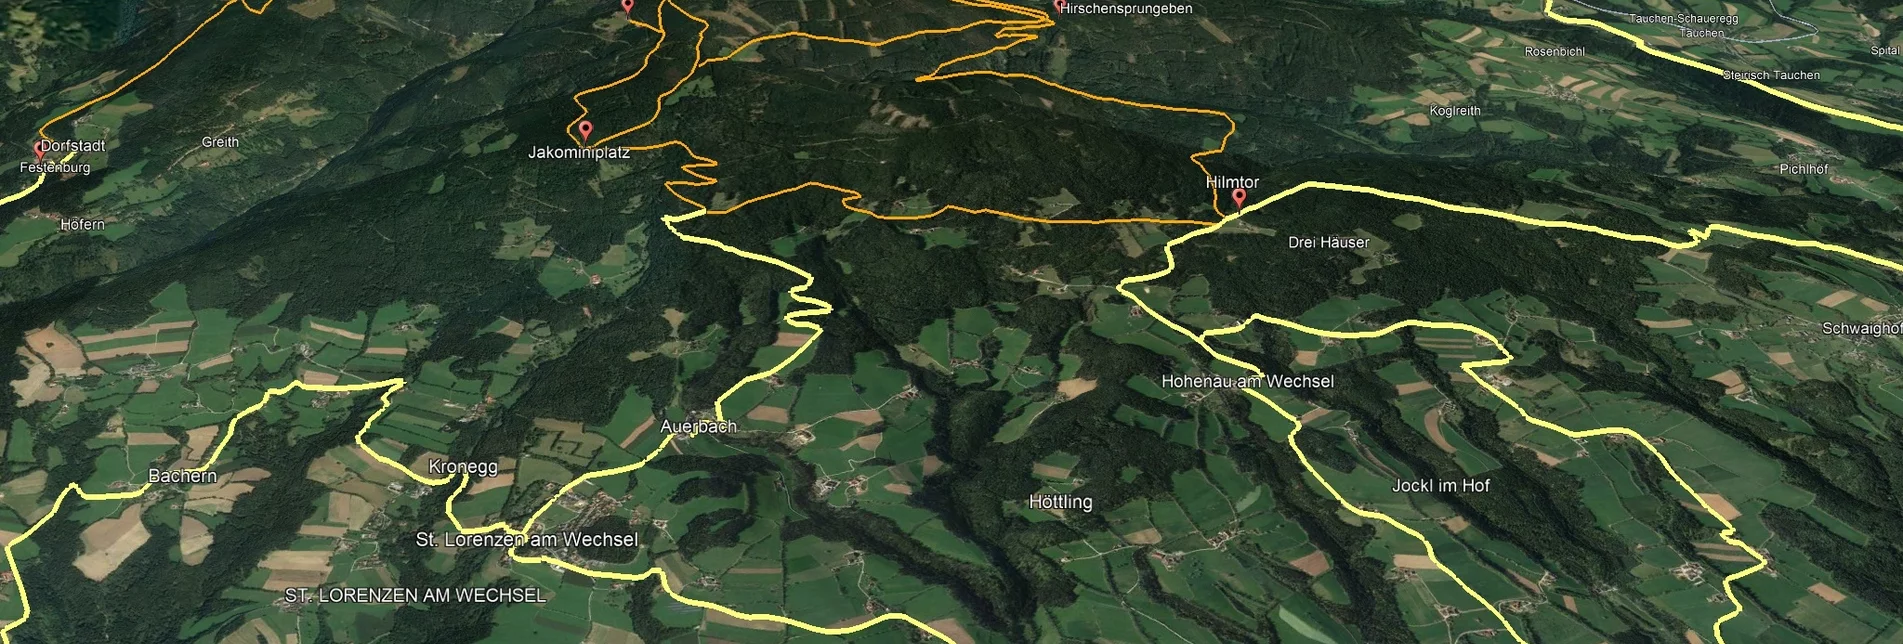 Mountainbike Steirische Wexl Trails - Hilmtor Route - Touren-Impression #1 | © Verein Tourismusentwicklung Steirischer Wechsel